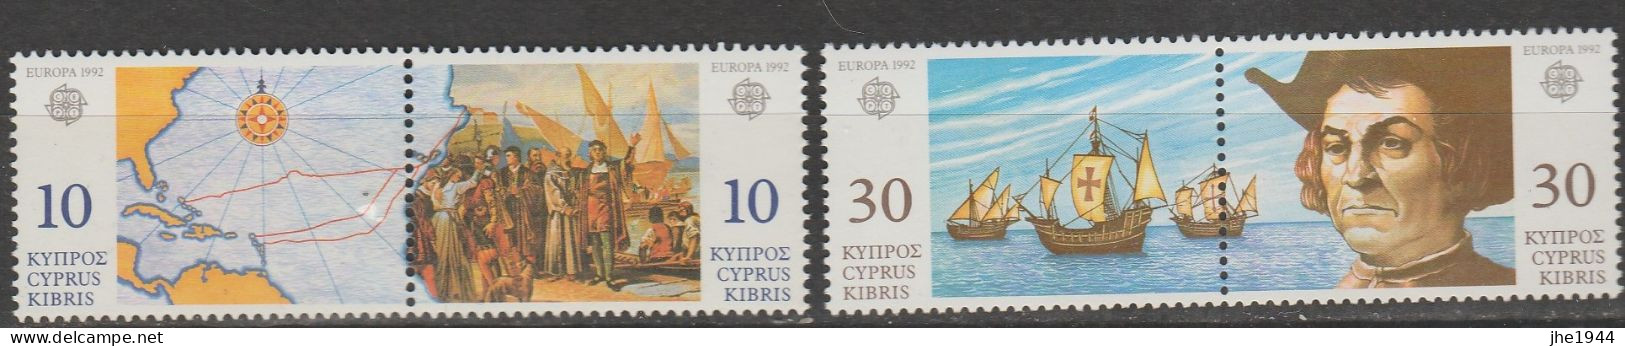 Chypre Europa 1992 N° 790 à 793 ** Decouverte Amerique - 1992